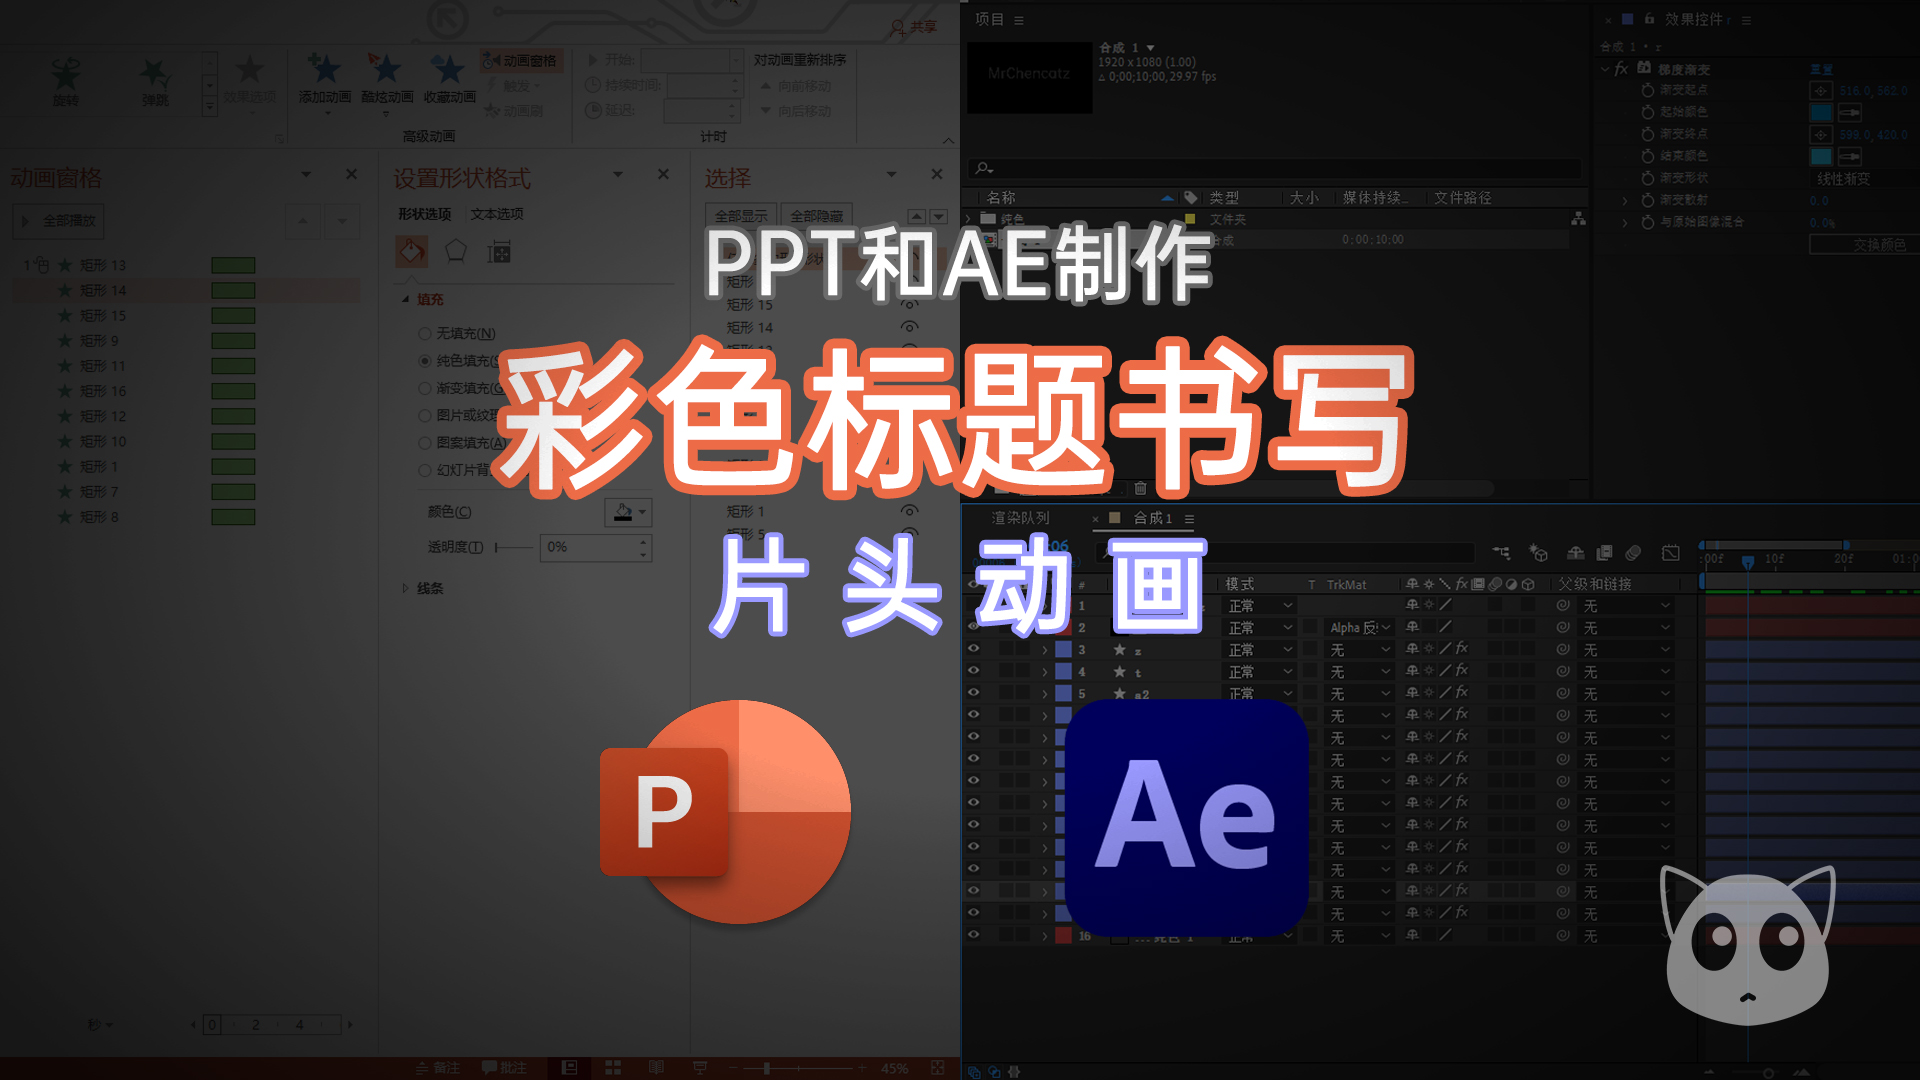 PPT和AE制作彩色标题书写片头动画